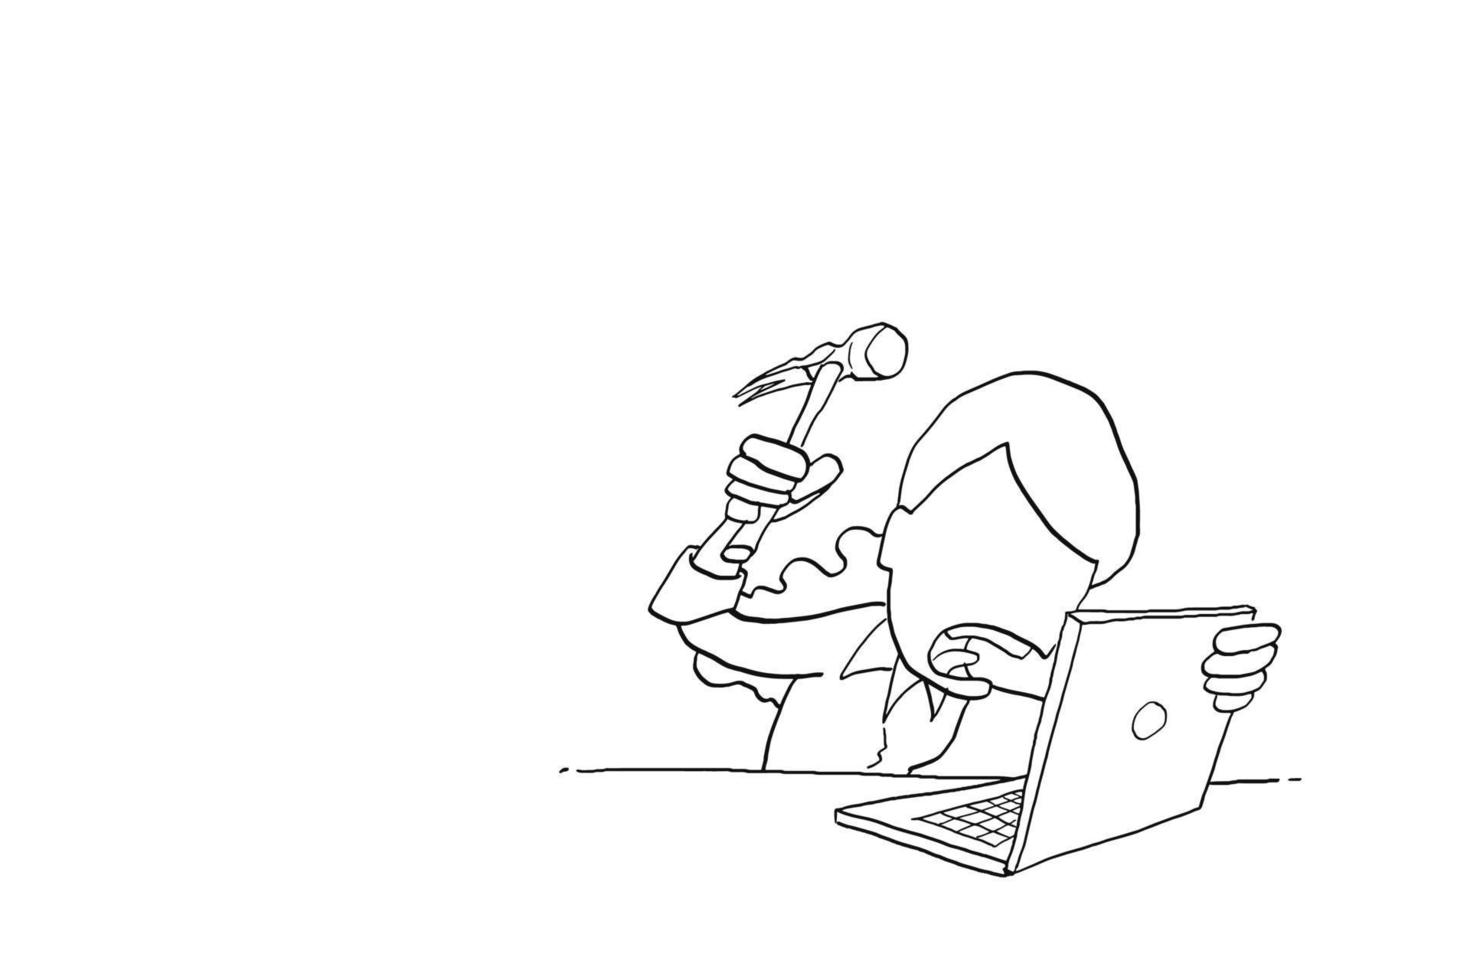 trabalhadora de estresse fica com raiva e quer martelar o laptop. desenho de ilustração vetorial de desenho animado vetor